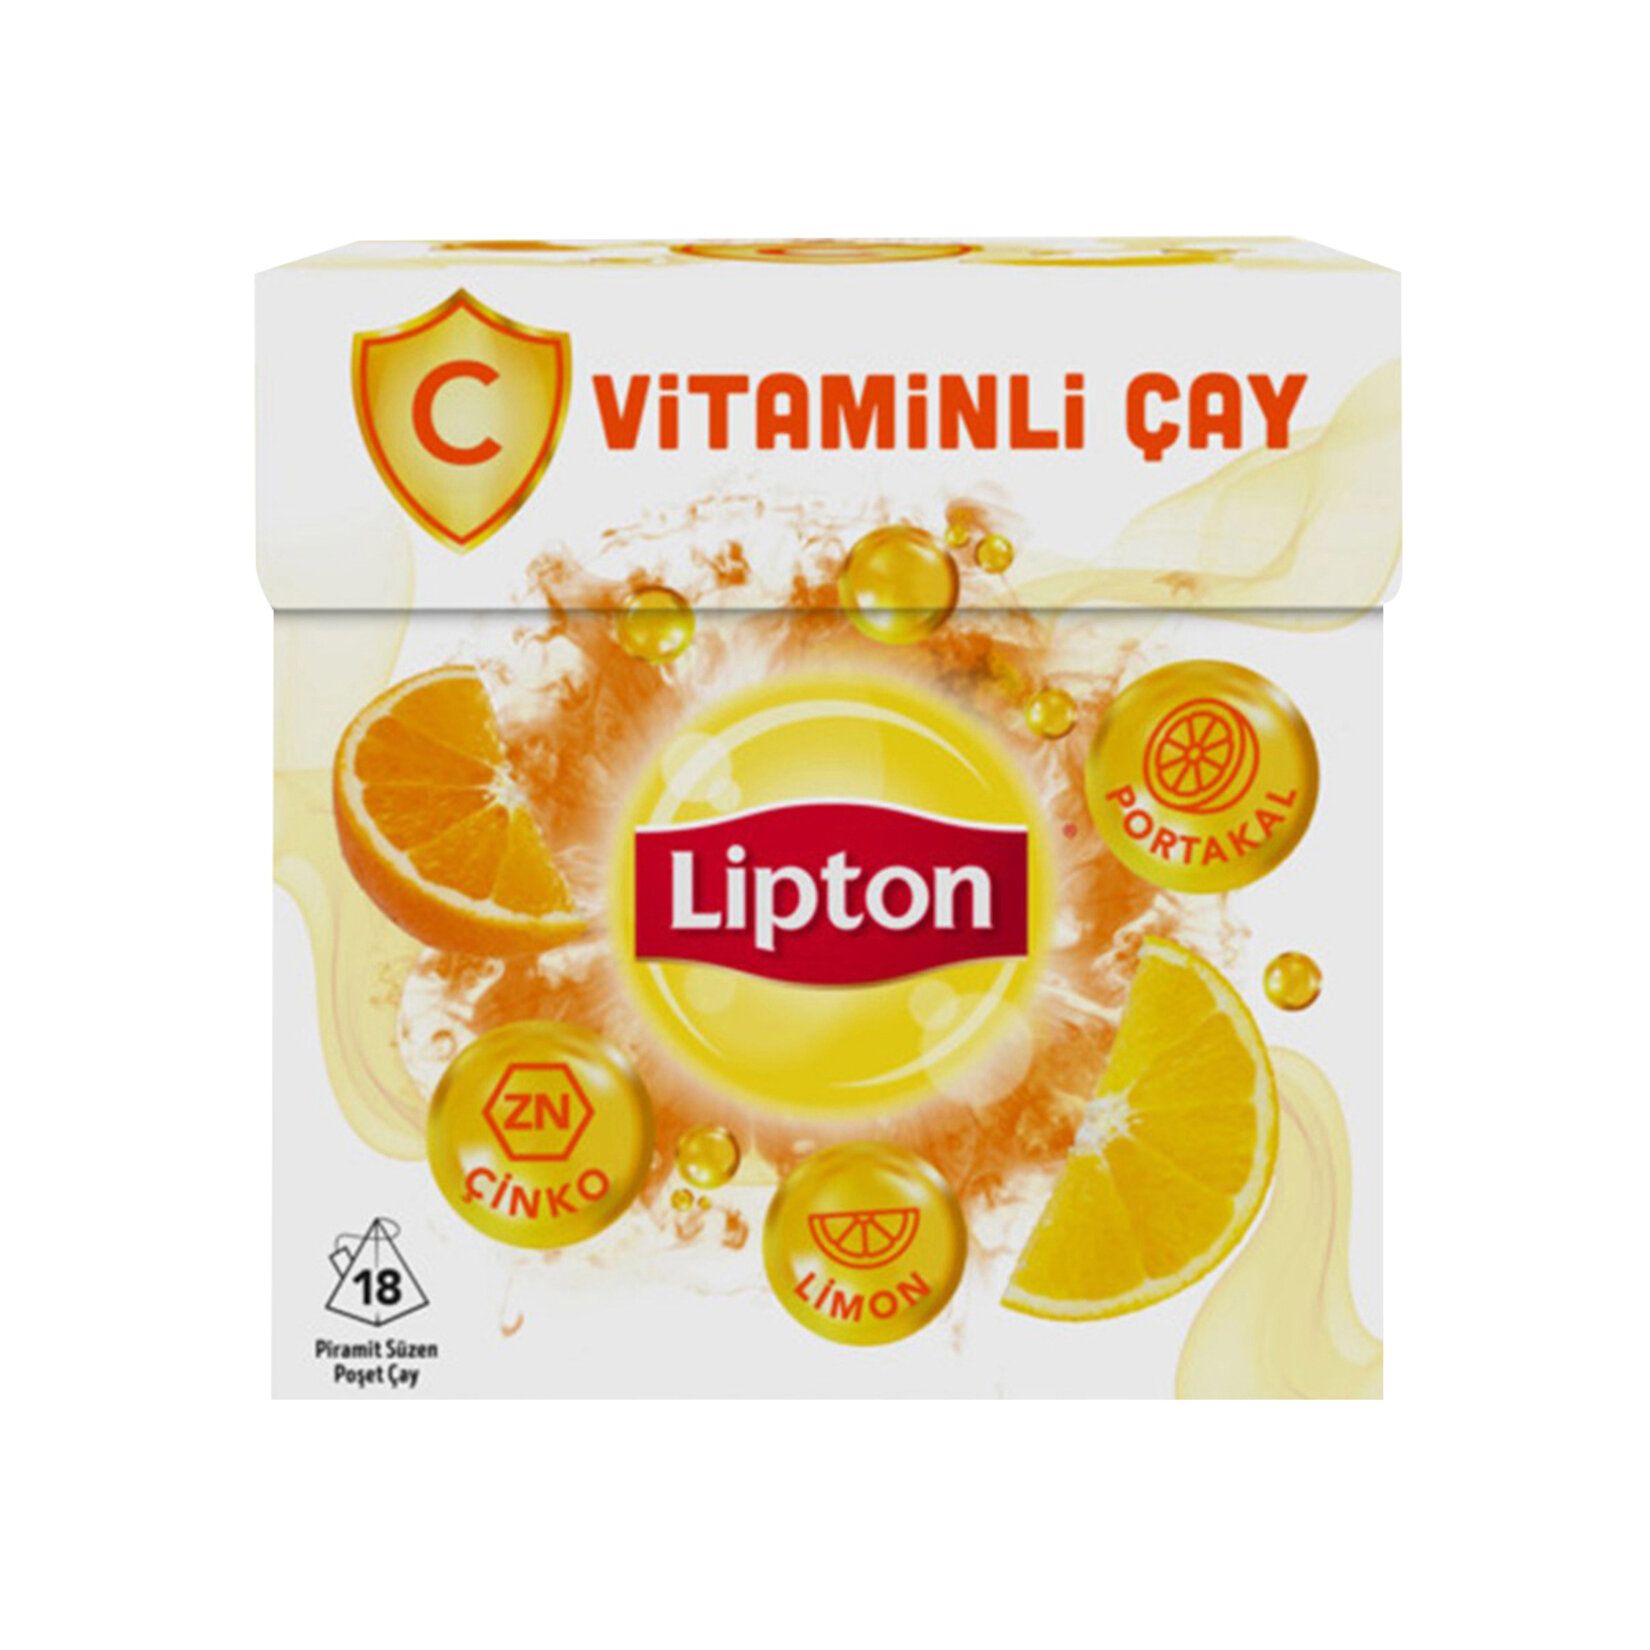 968606-lipton-c-vitaminli-cay